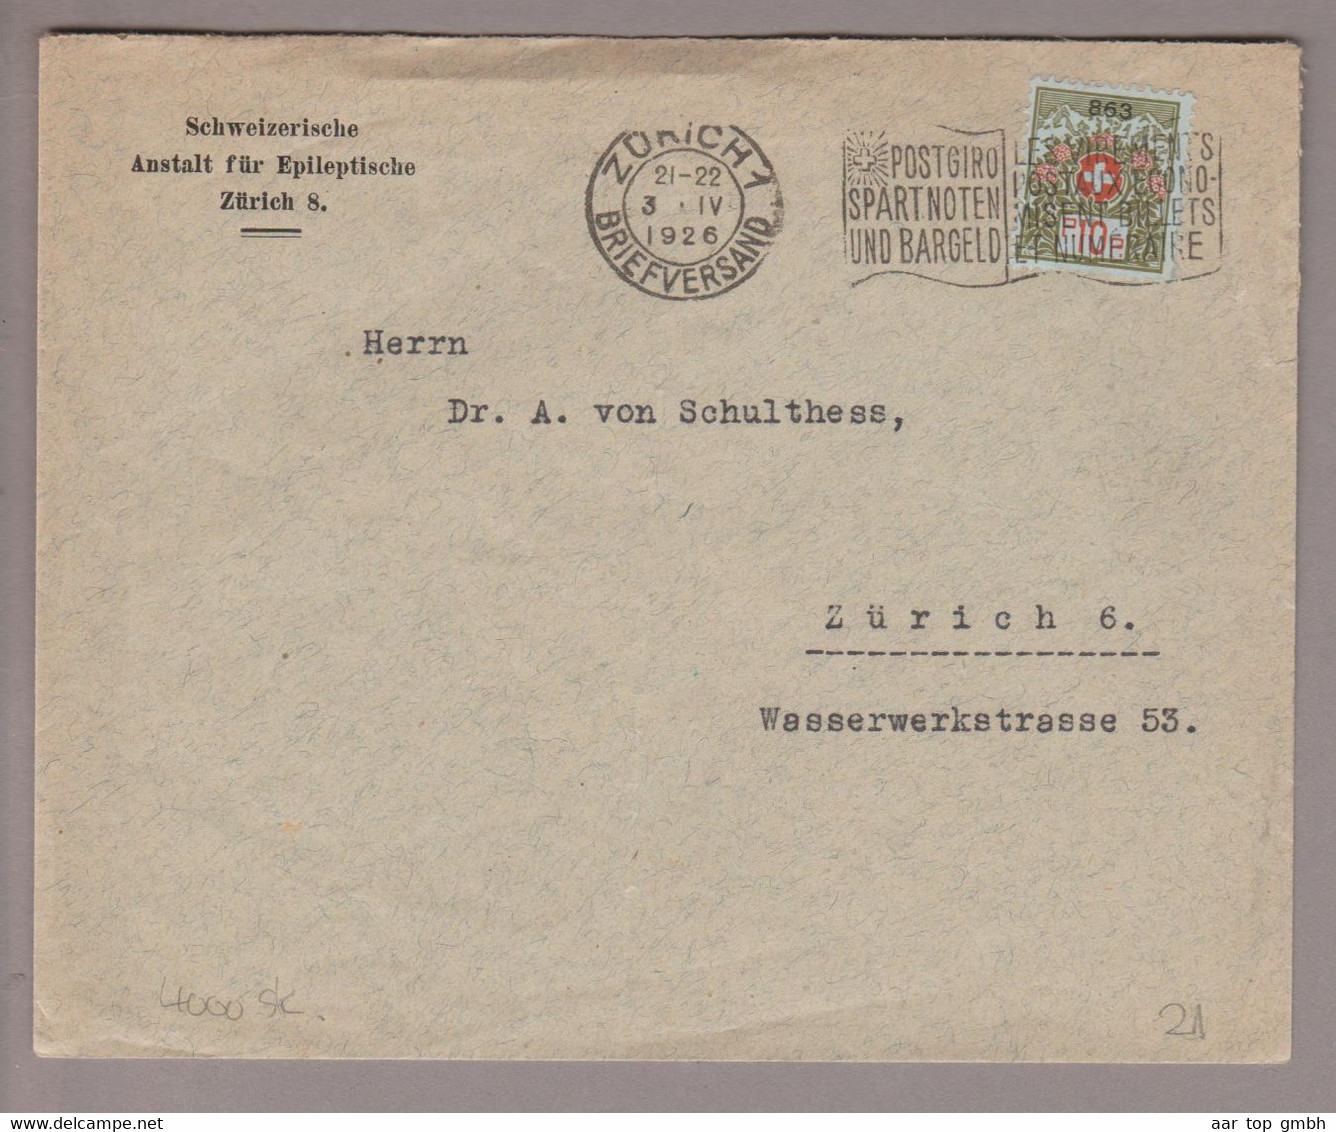 CH Portofreiheit Zu#9 10Rp. GR#863 Brief 1926-04-03 Zürich Schweiz. Anstalt F.Epileptische Zürich8 - Franchise